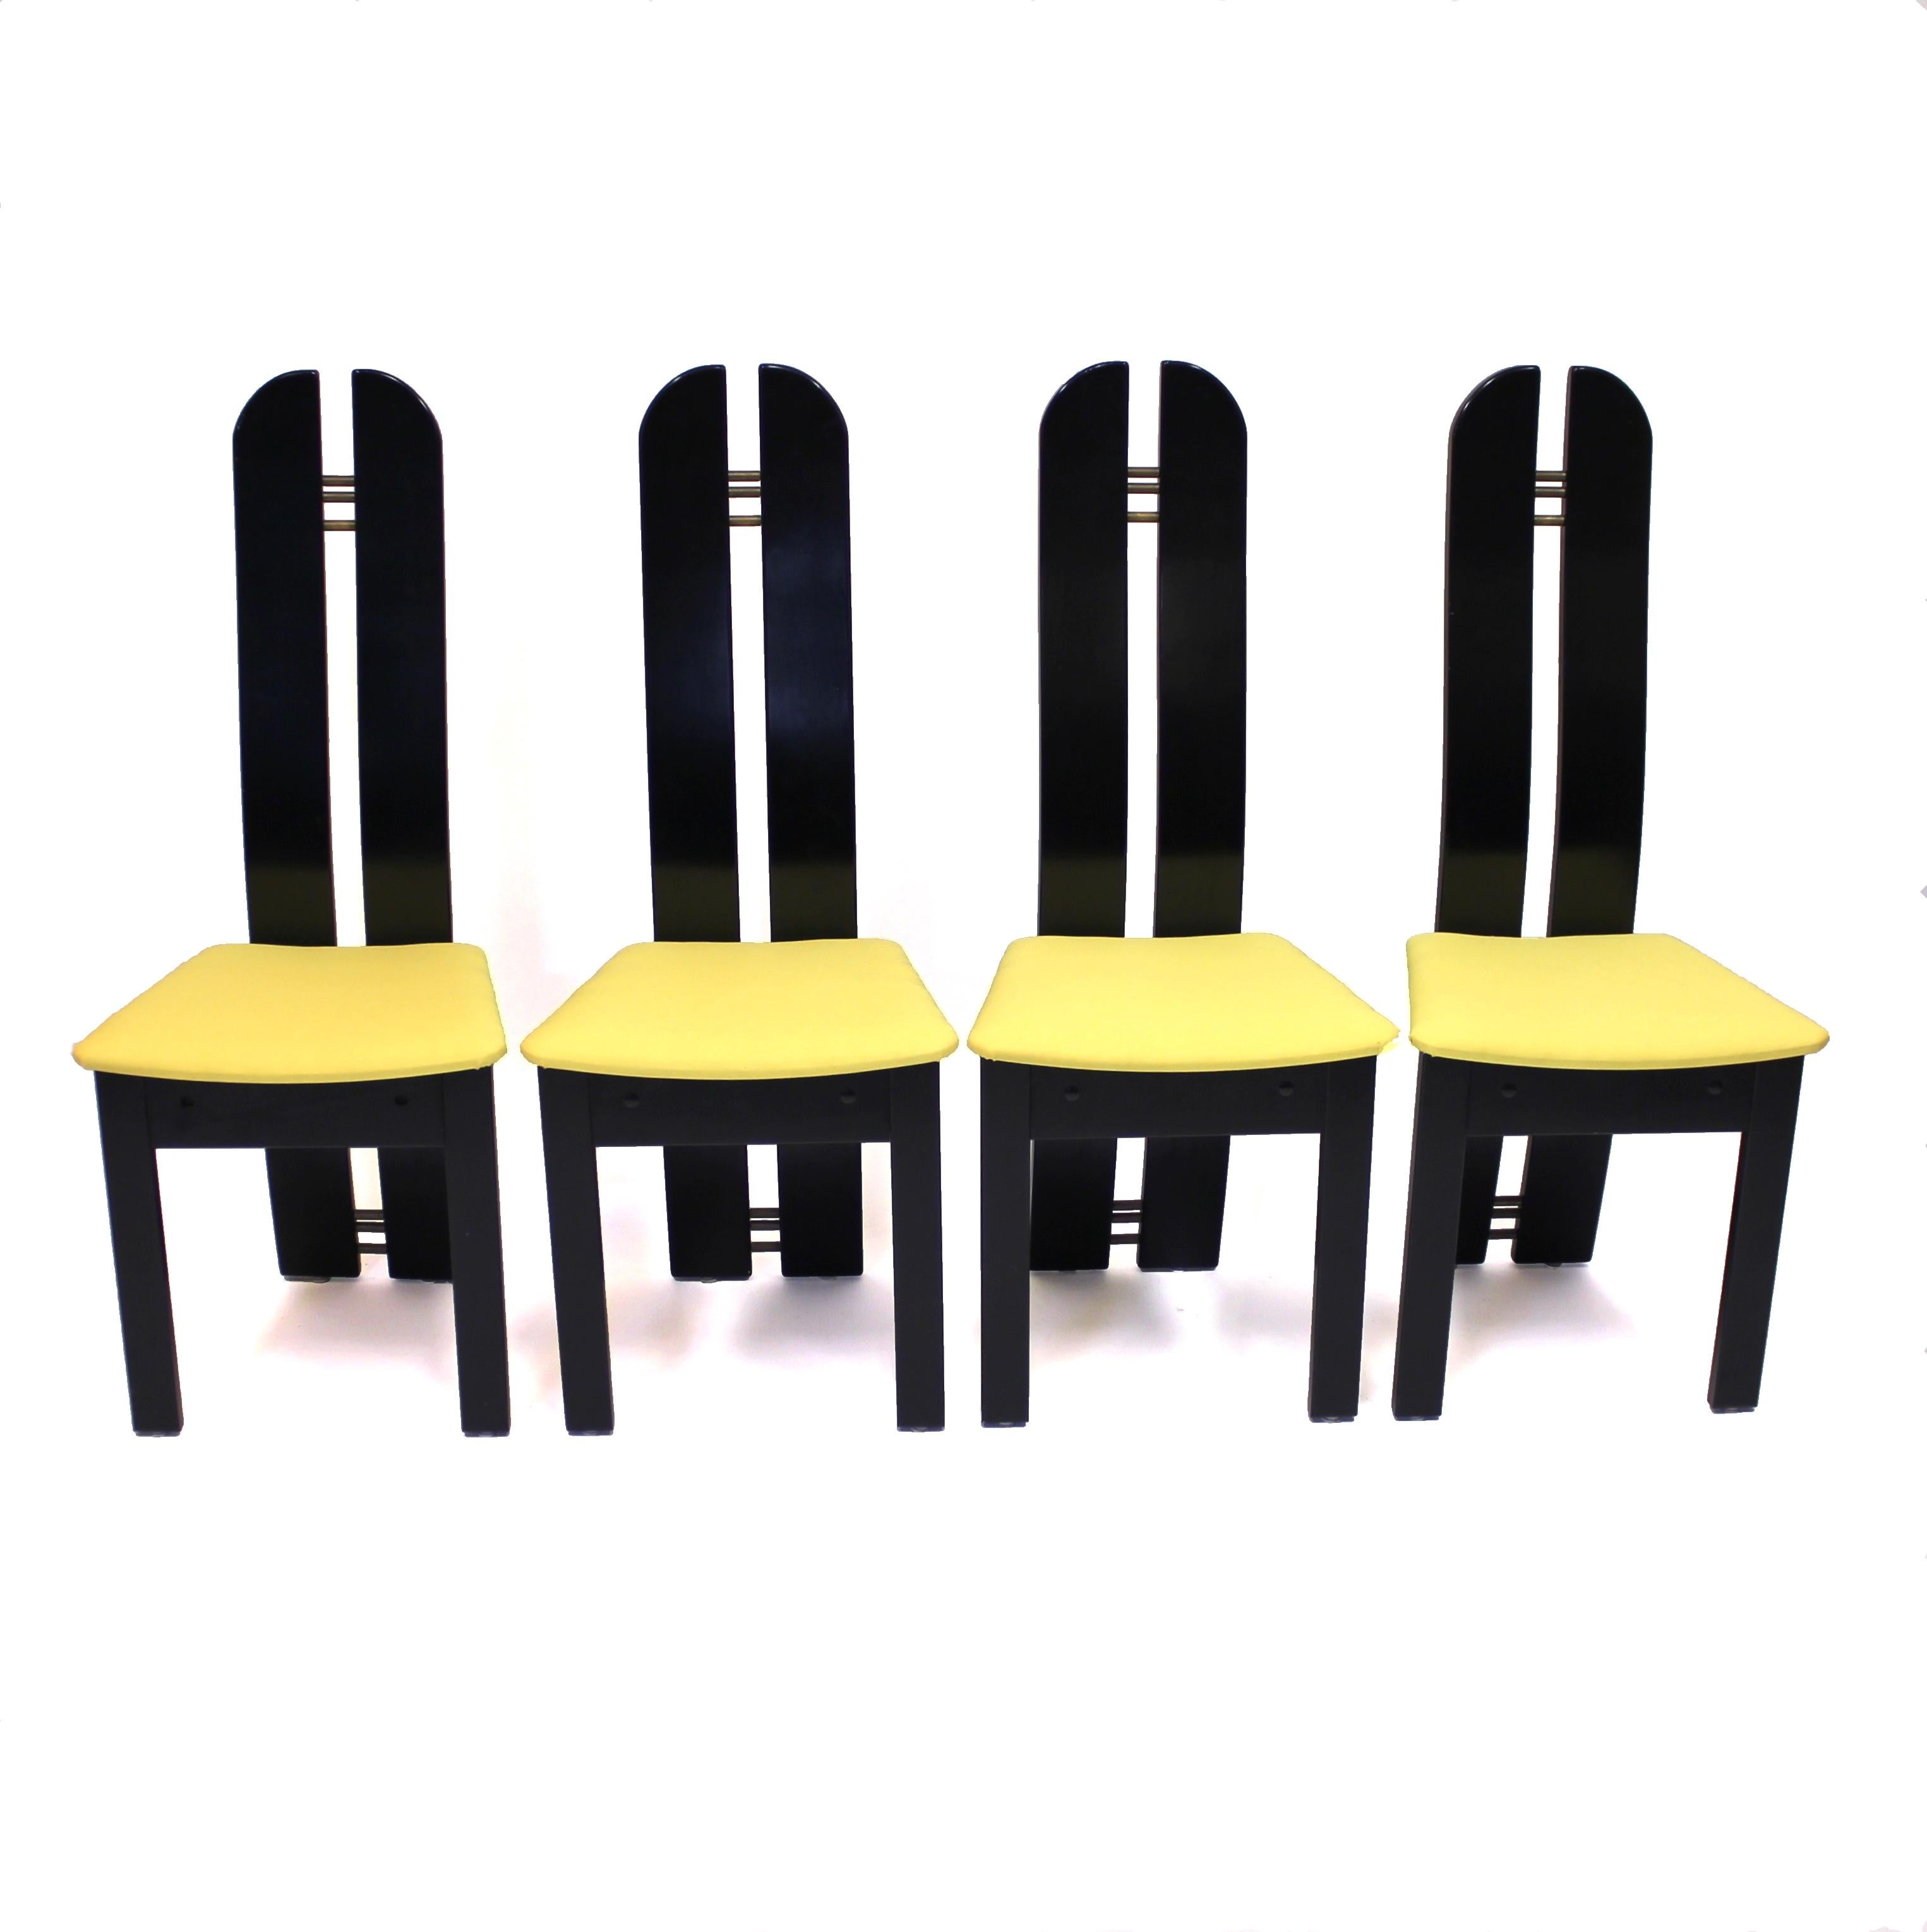 Satz von 4 postmodernen Stühlen mit hoher Rückenlehne, hergestellt von der dänischen Firma Mørkøv Møbelindustri ApS, die heute noch tätig ist. Produziert und gestaltet in den 1980er Jahren. Hergestellt aus schwarz lackiertem Holz und neu